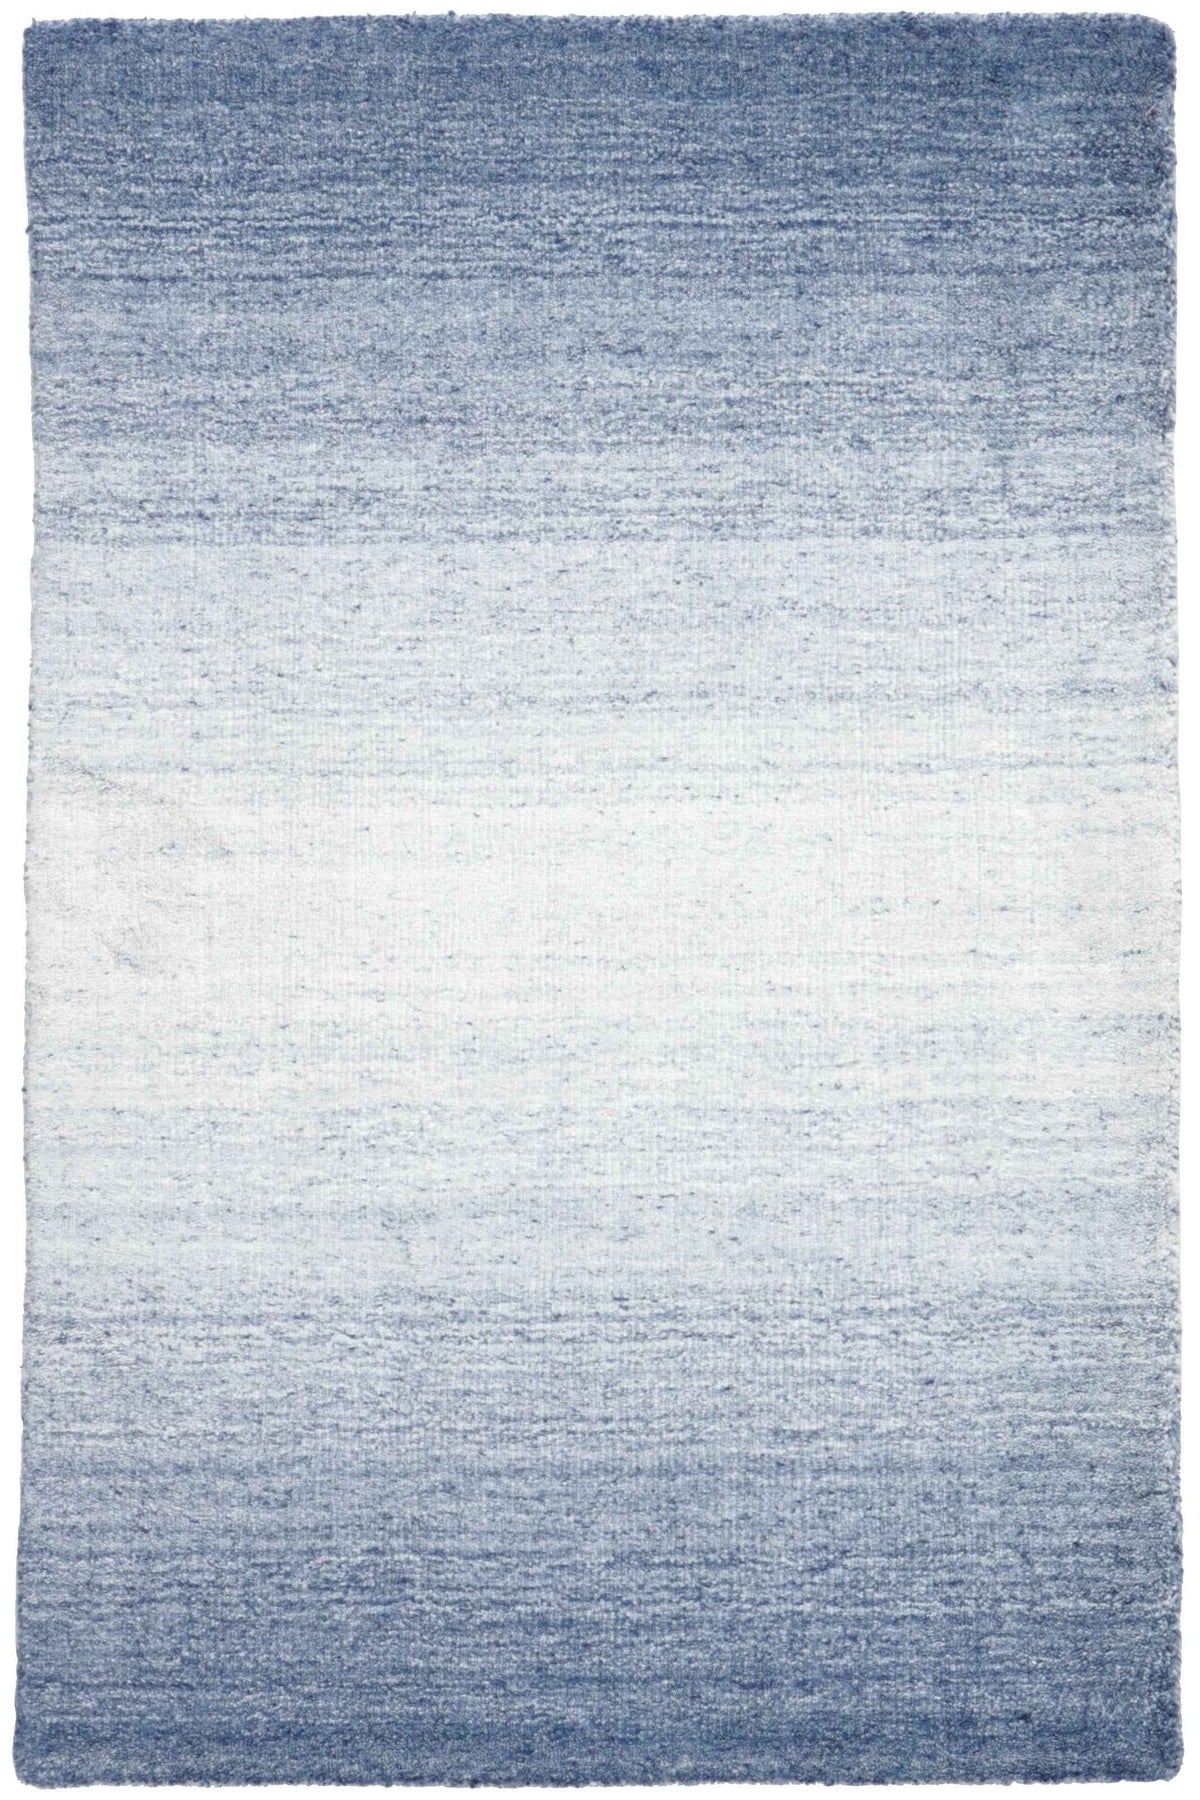 350x250 cm  Indian Wool/Viscose Blue Rug-Blau, Blue